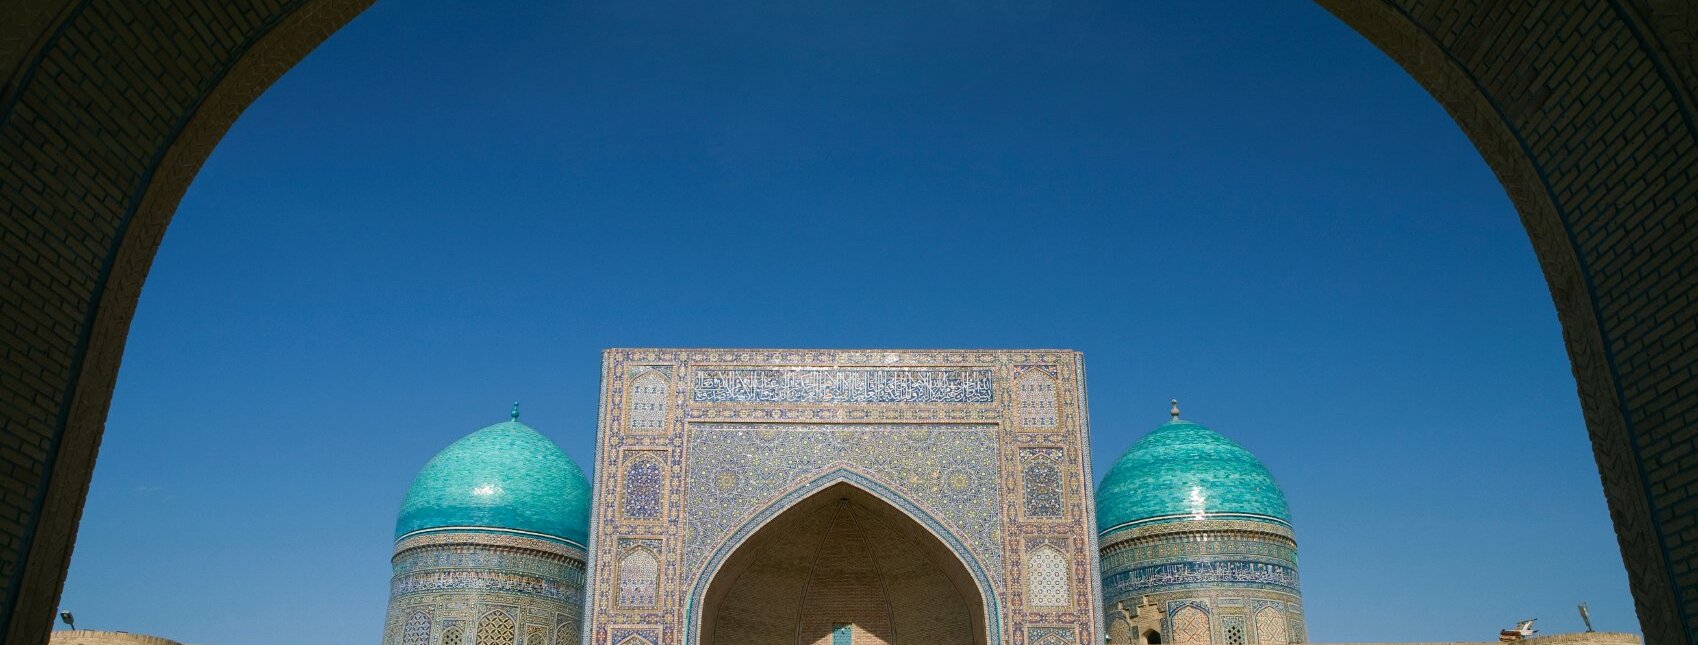 Mir-i-Arab Medressa, Bukhara